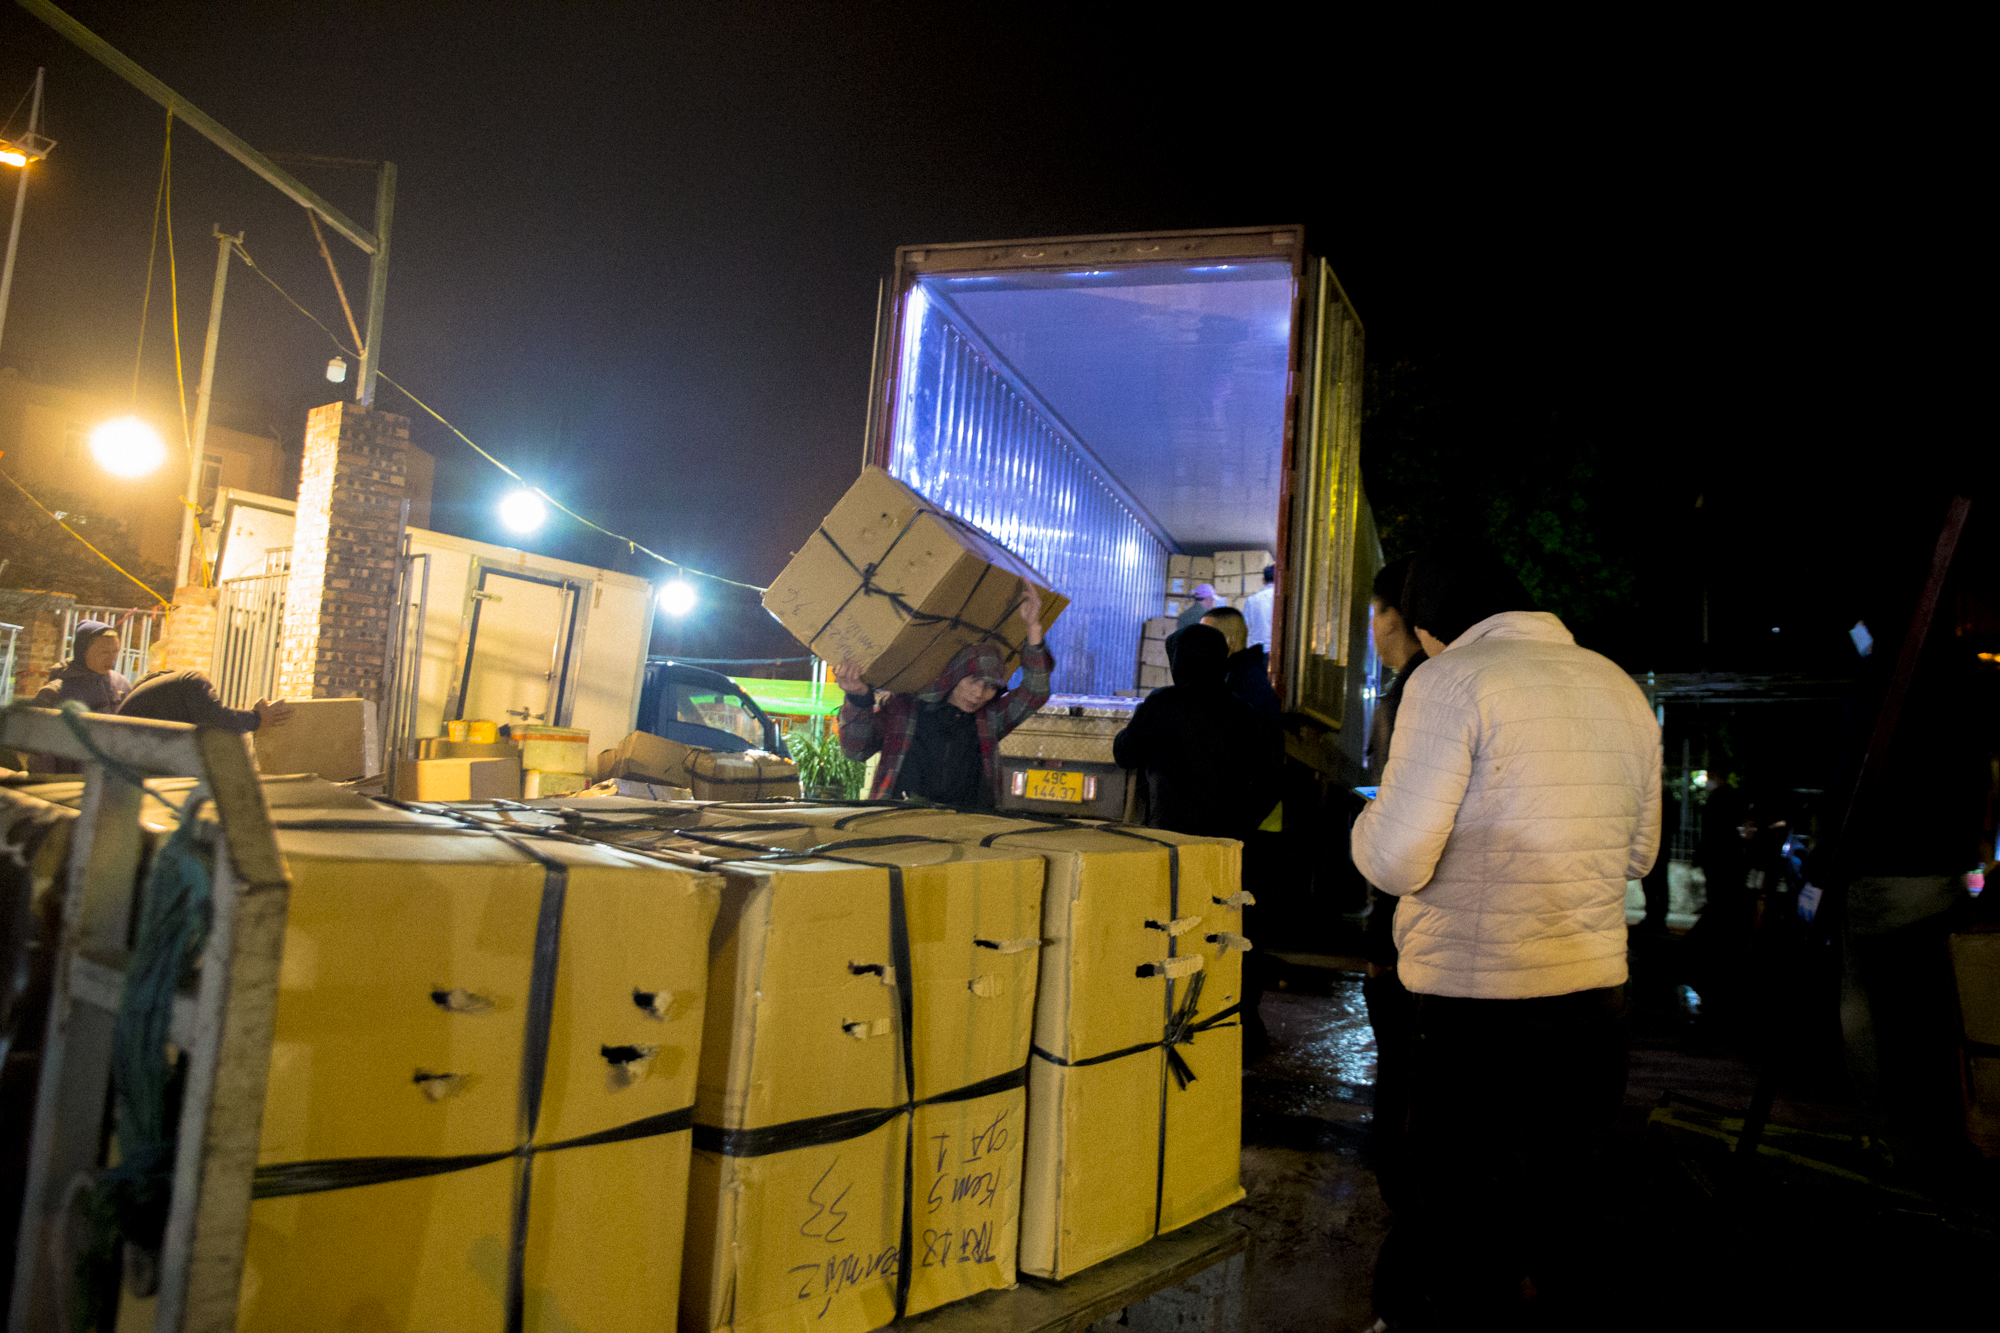 Cửu vạn chợ đầu mối ở Hà Nội làm xuyên đêm những ngày rét mướt, khuân vác 300 kiện hàng mỗi ngày - Ảnh 9.